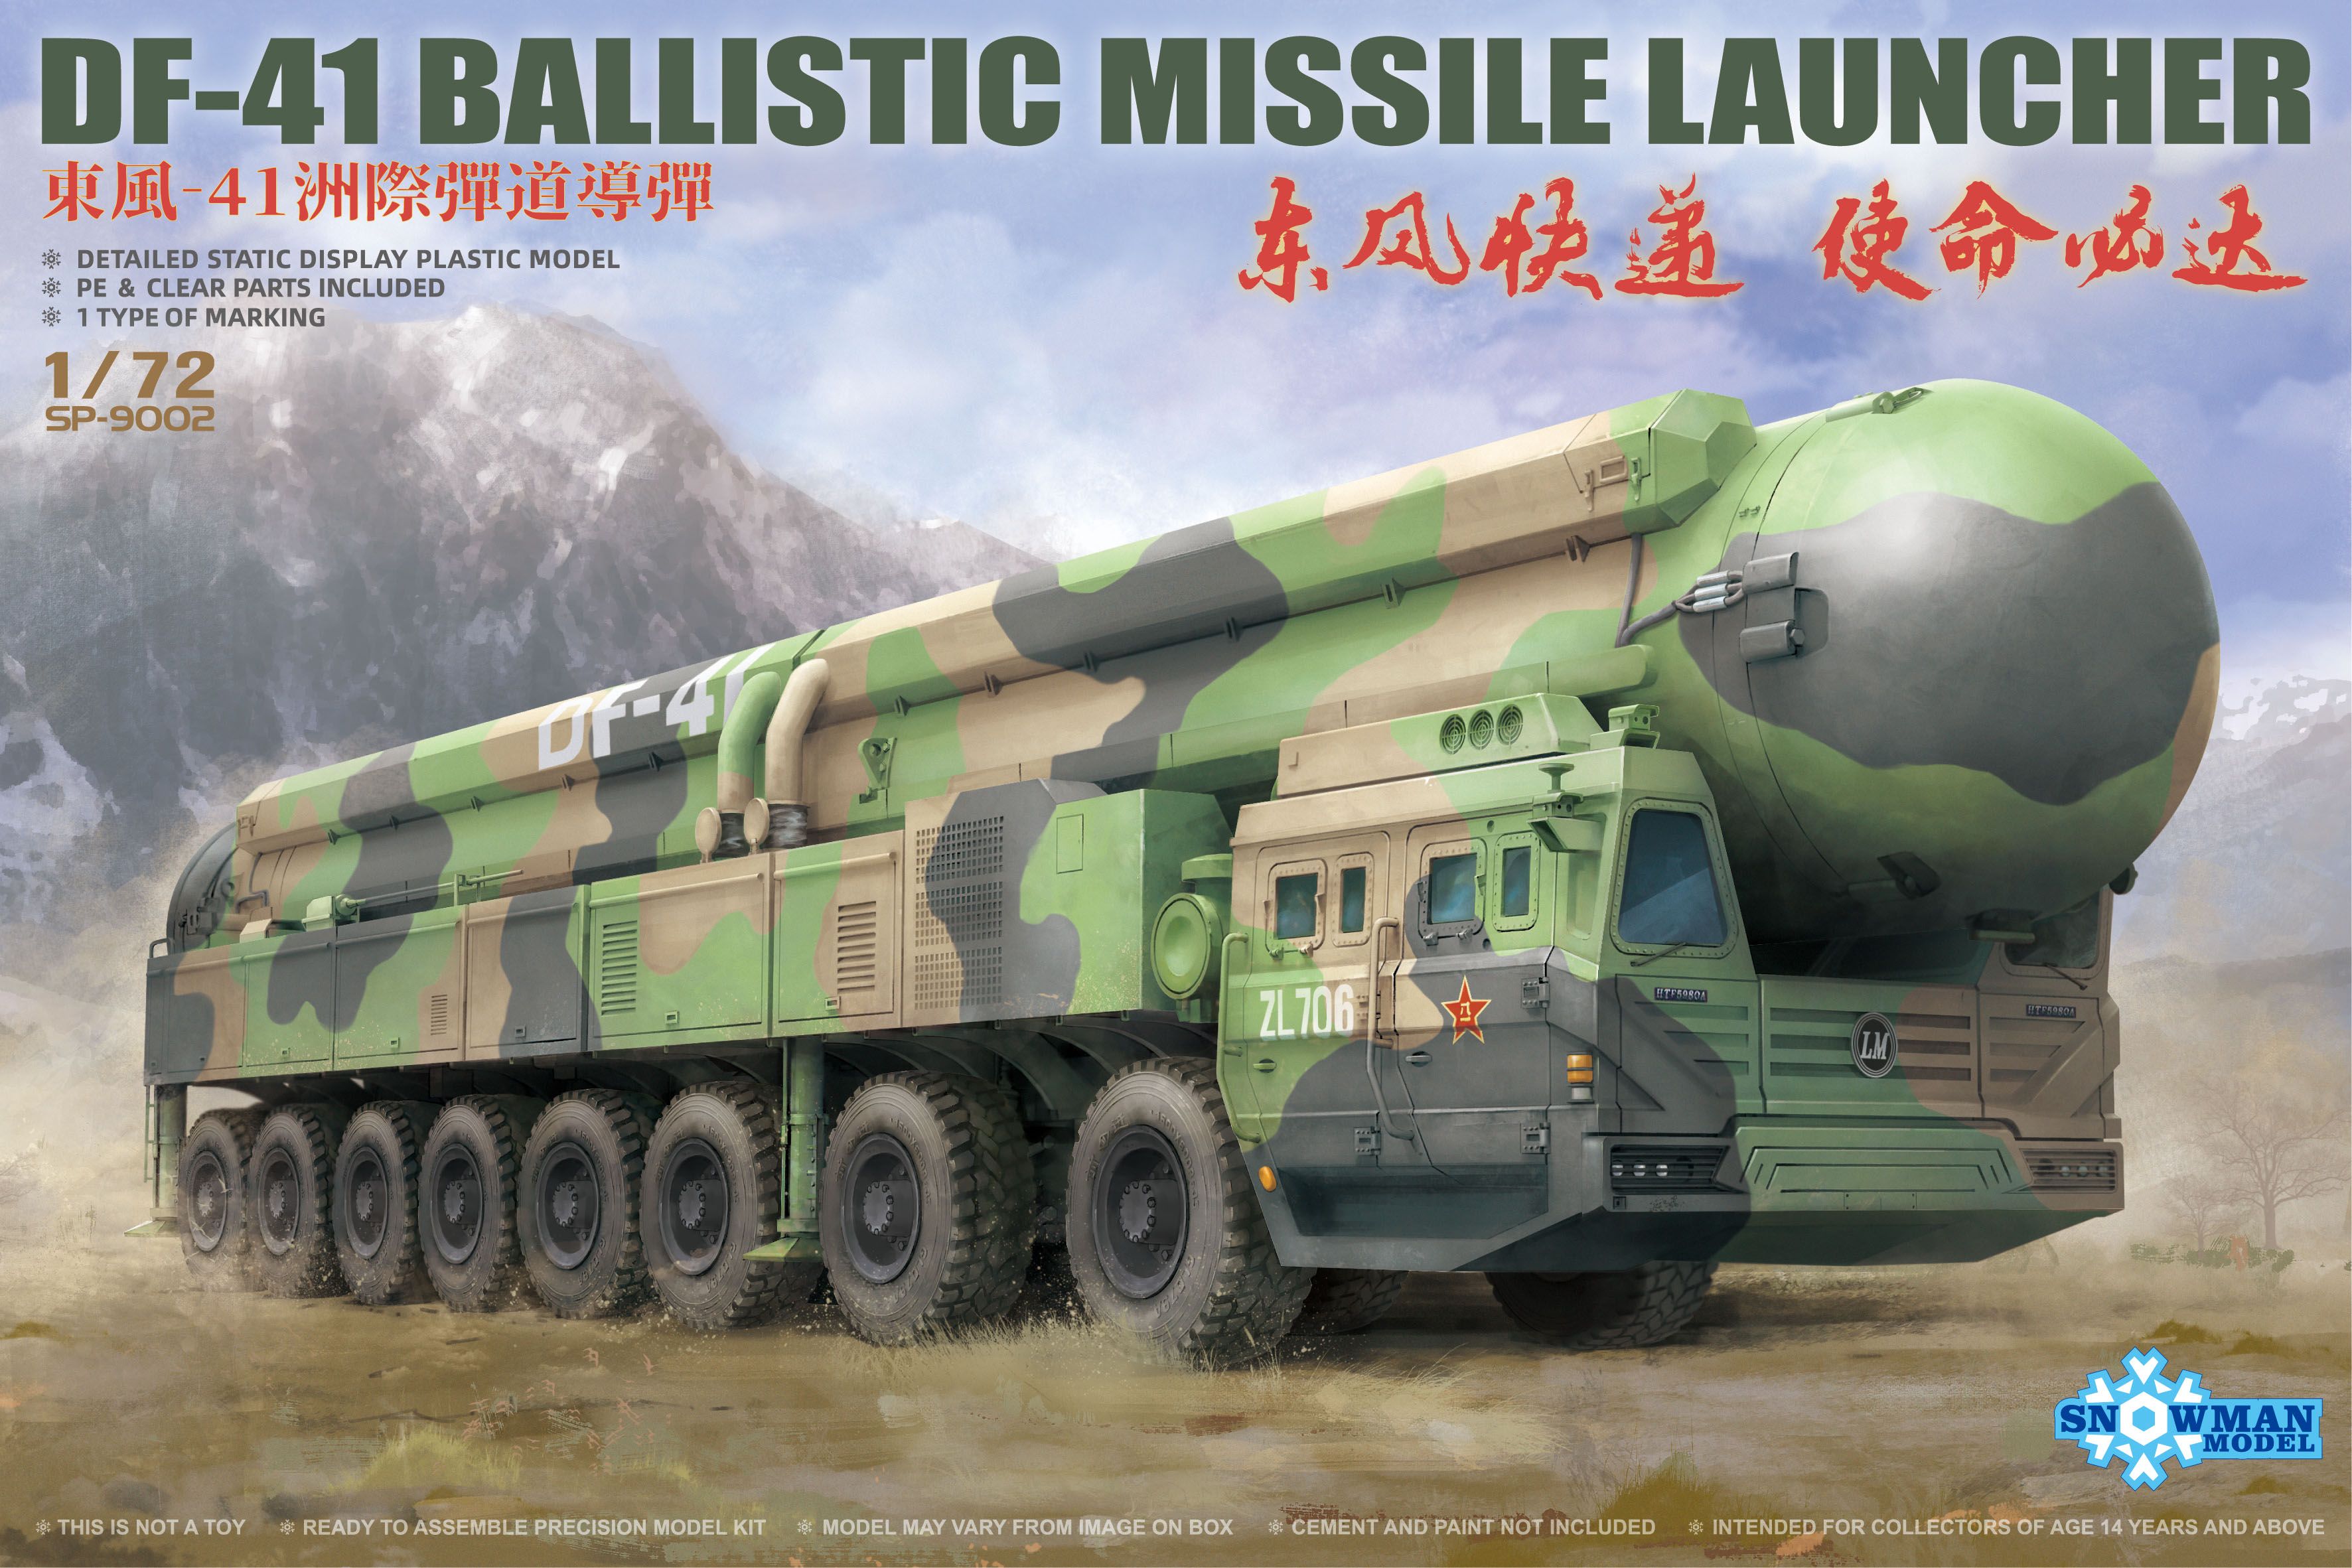 Snowman Models 1/72 DF-41 Ballistic Missile Launch Model Kit